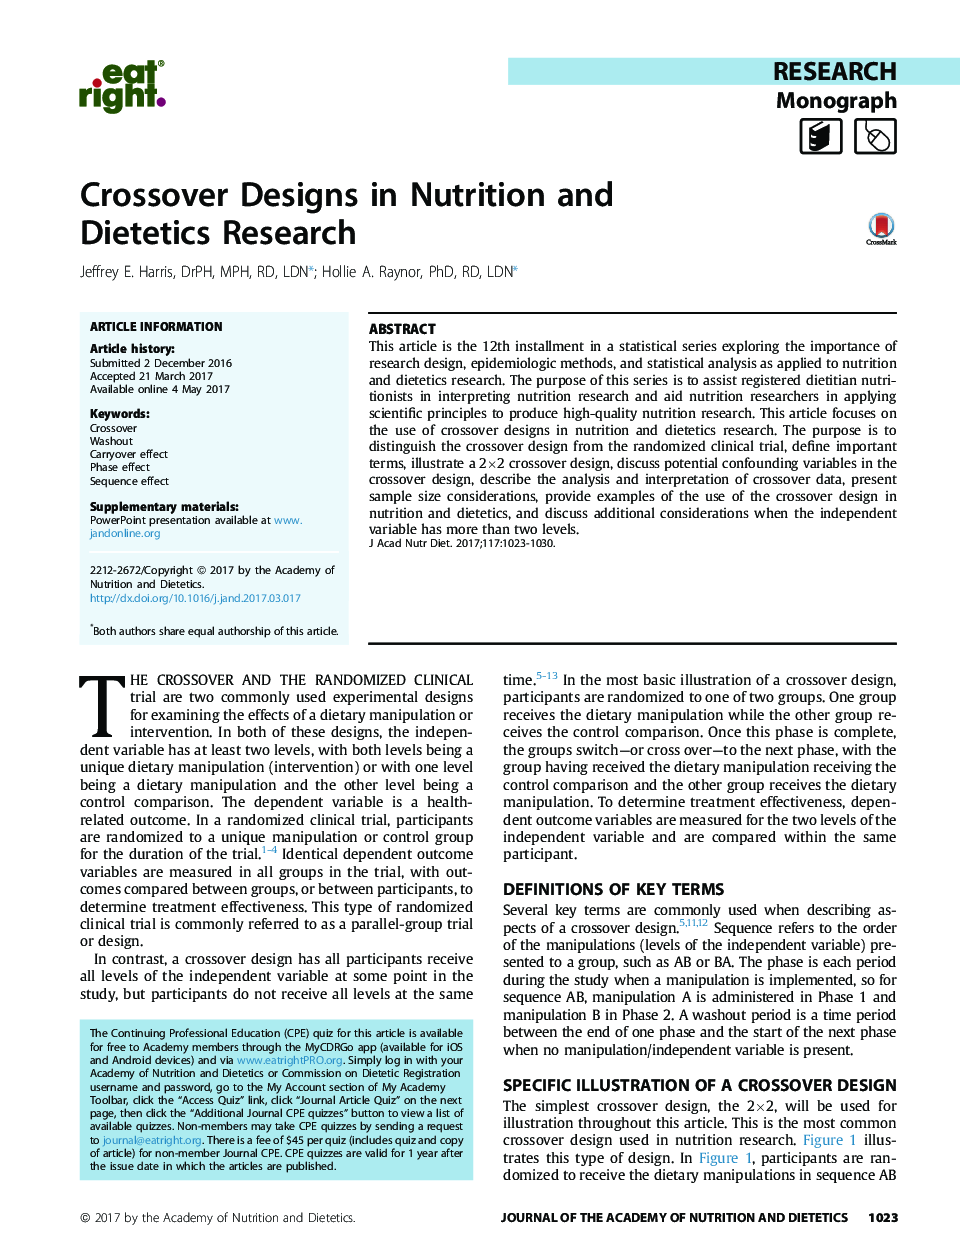 طراحی متقاطع در تحقیقات تغذیه و رژیم غذایی 